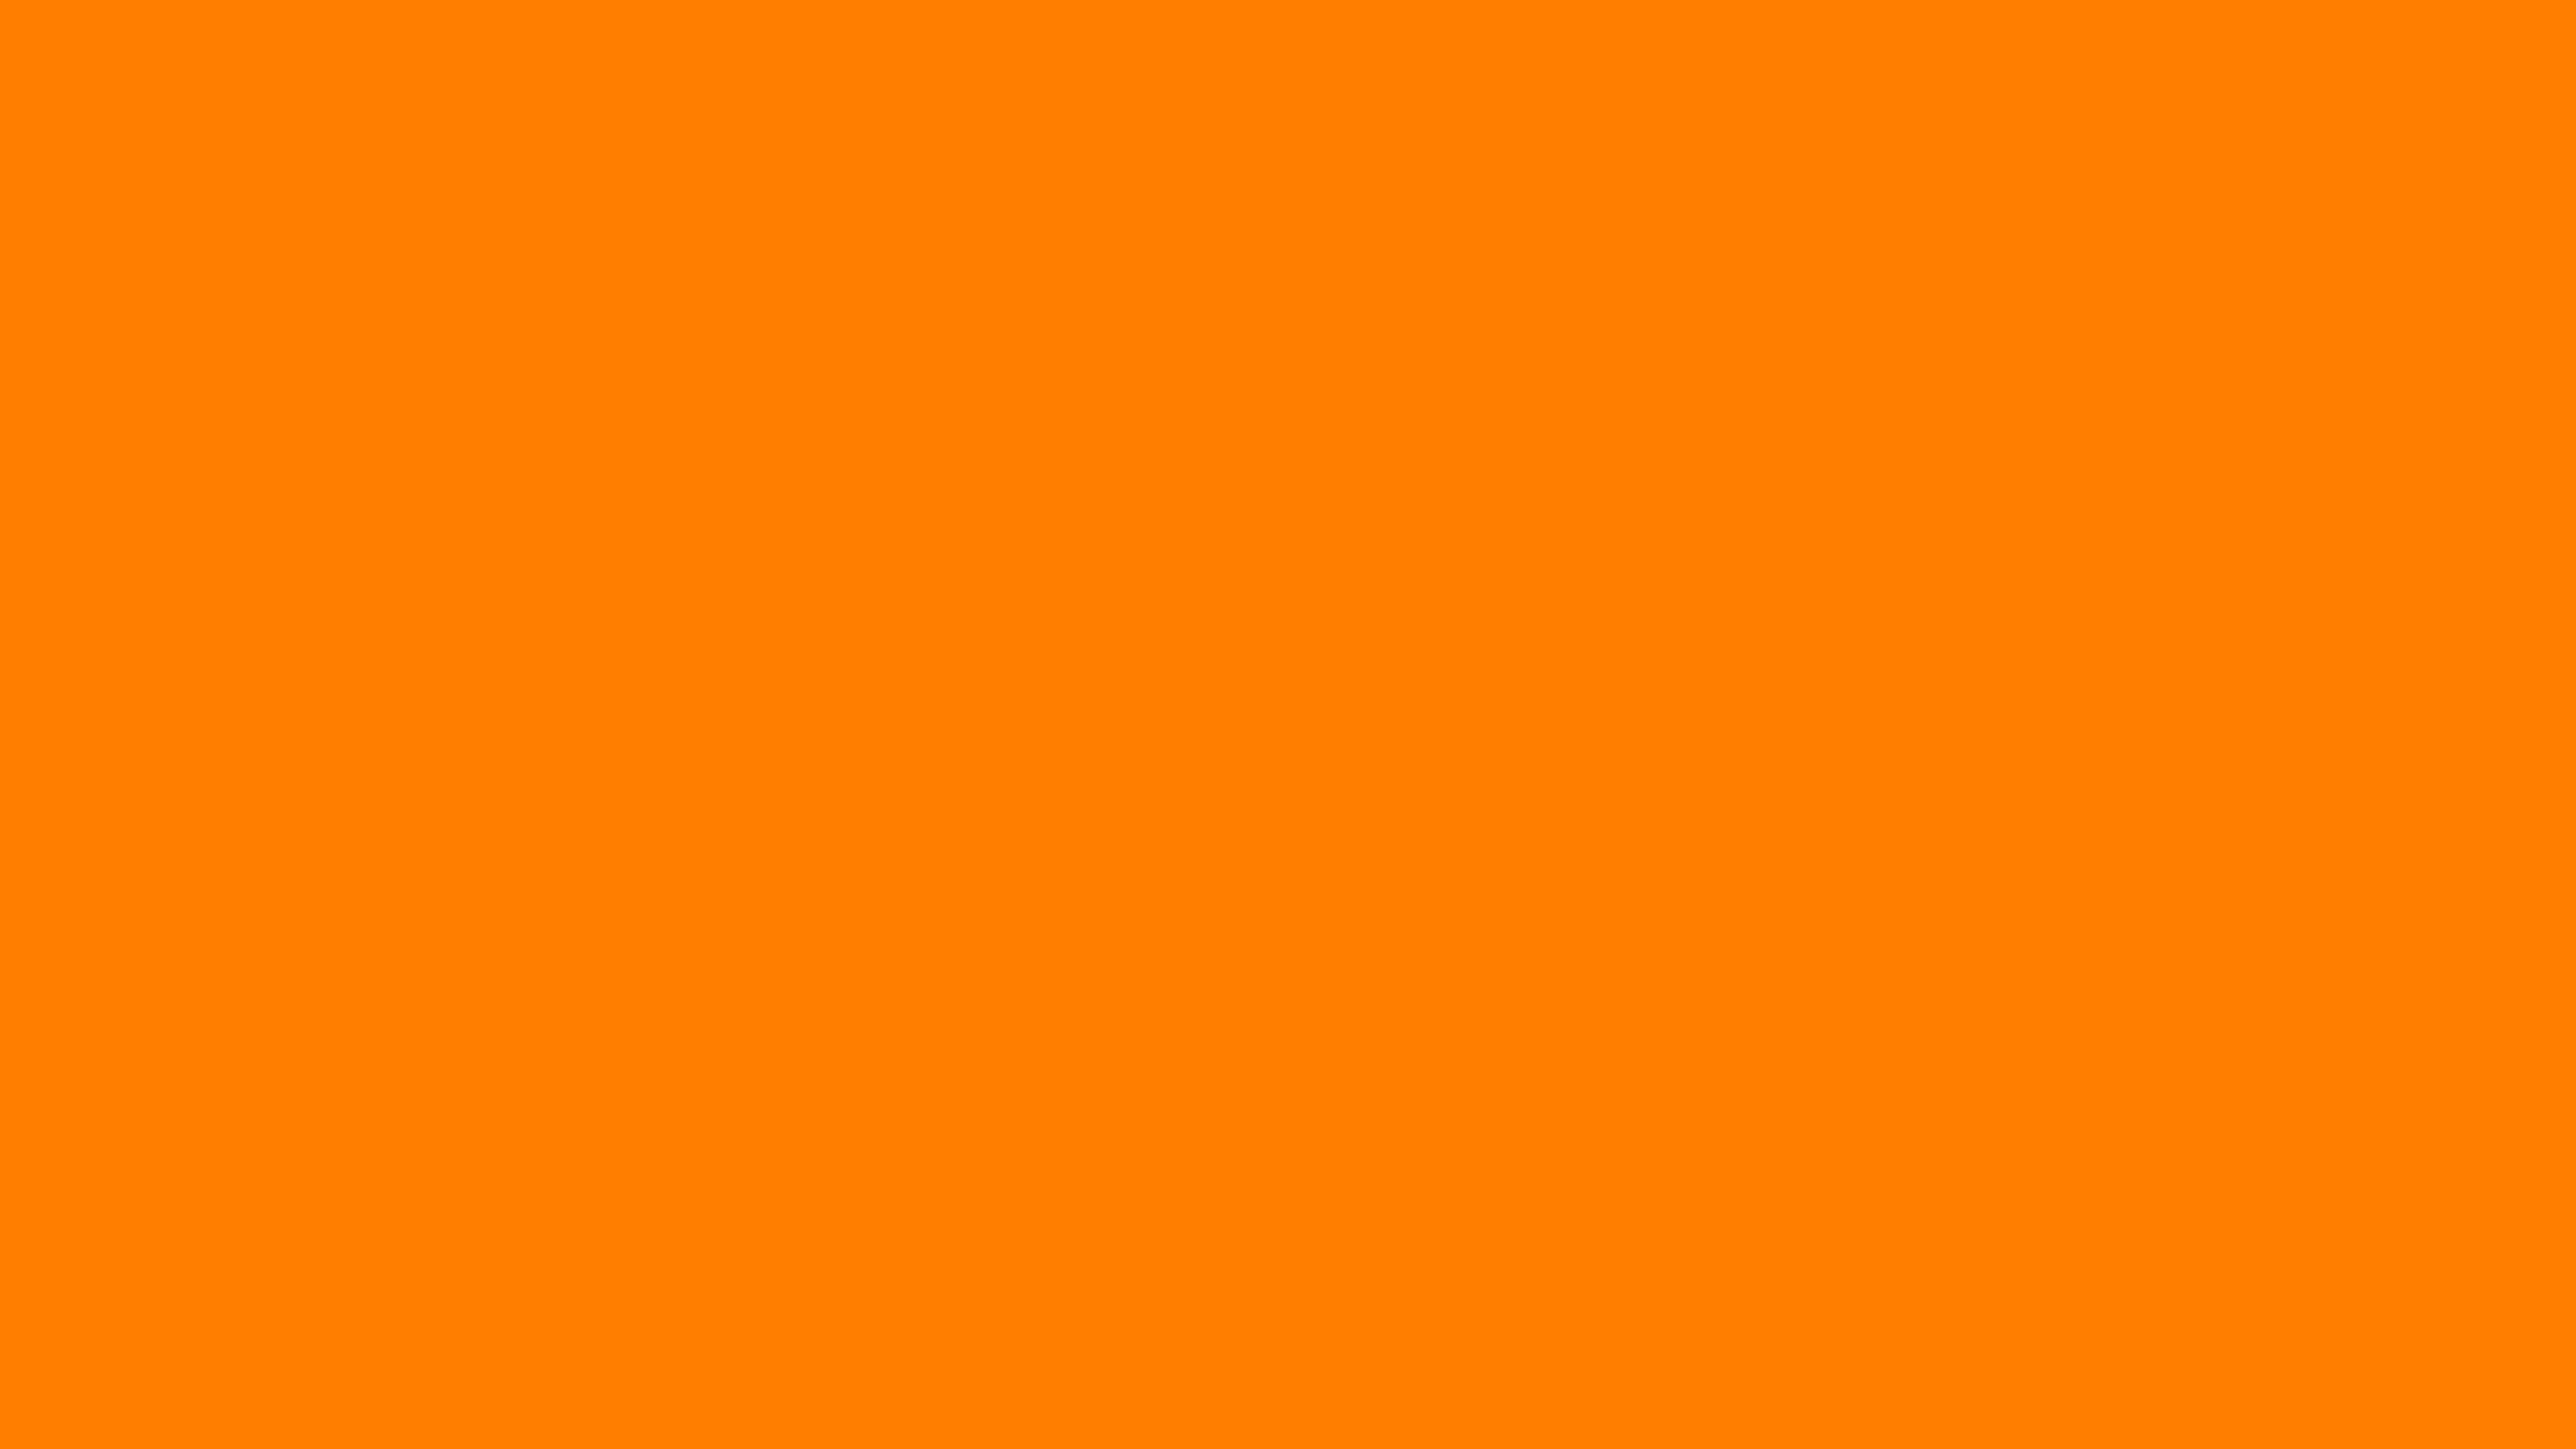 Màu cam đậm: Màu cam đậm sẽ mang lại sự tươi mới và nổi bật cho bức ảnh của bạn. Nếu bạn muốn tạo dấu ấn độc đáo và thu hút sự chú ý, hãy thử sử dụng màu cam đậm cho hình ảnh của mình.